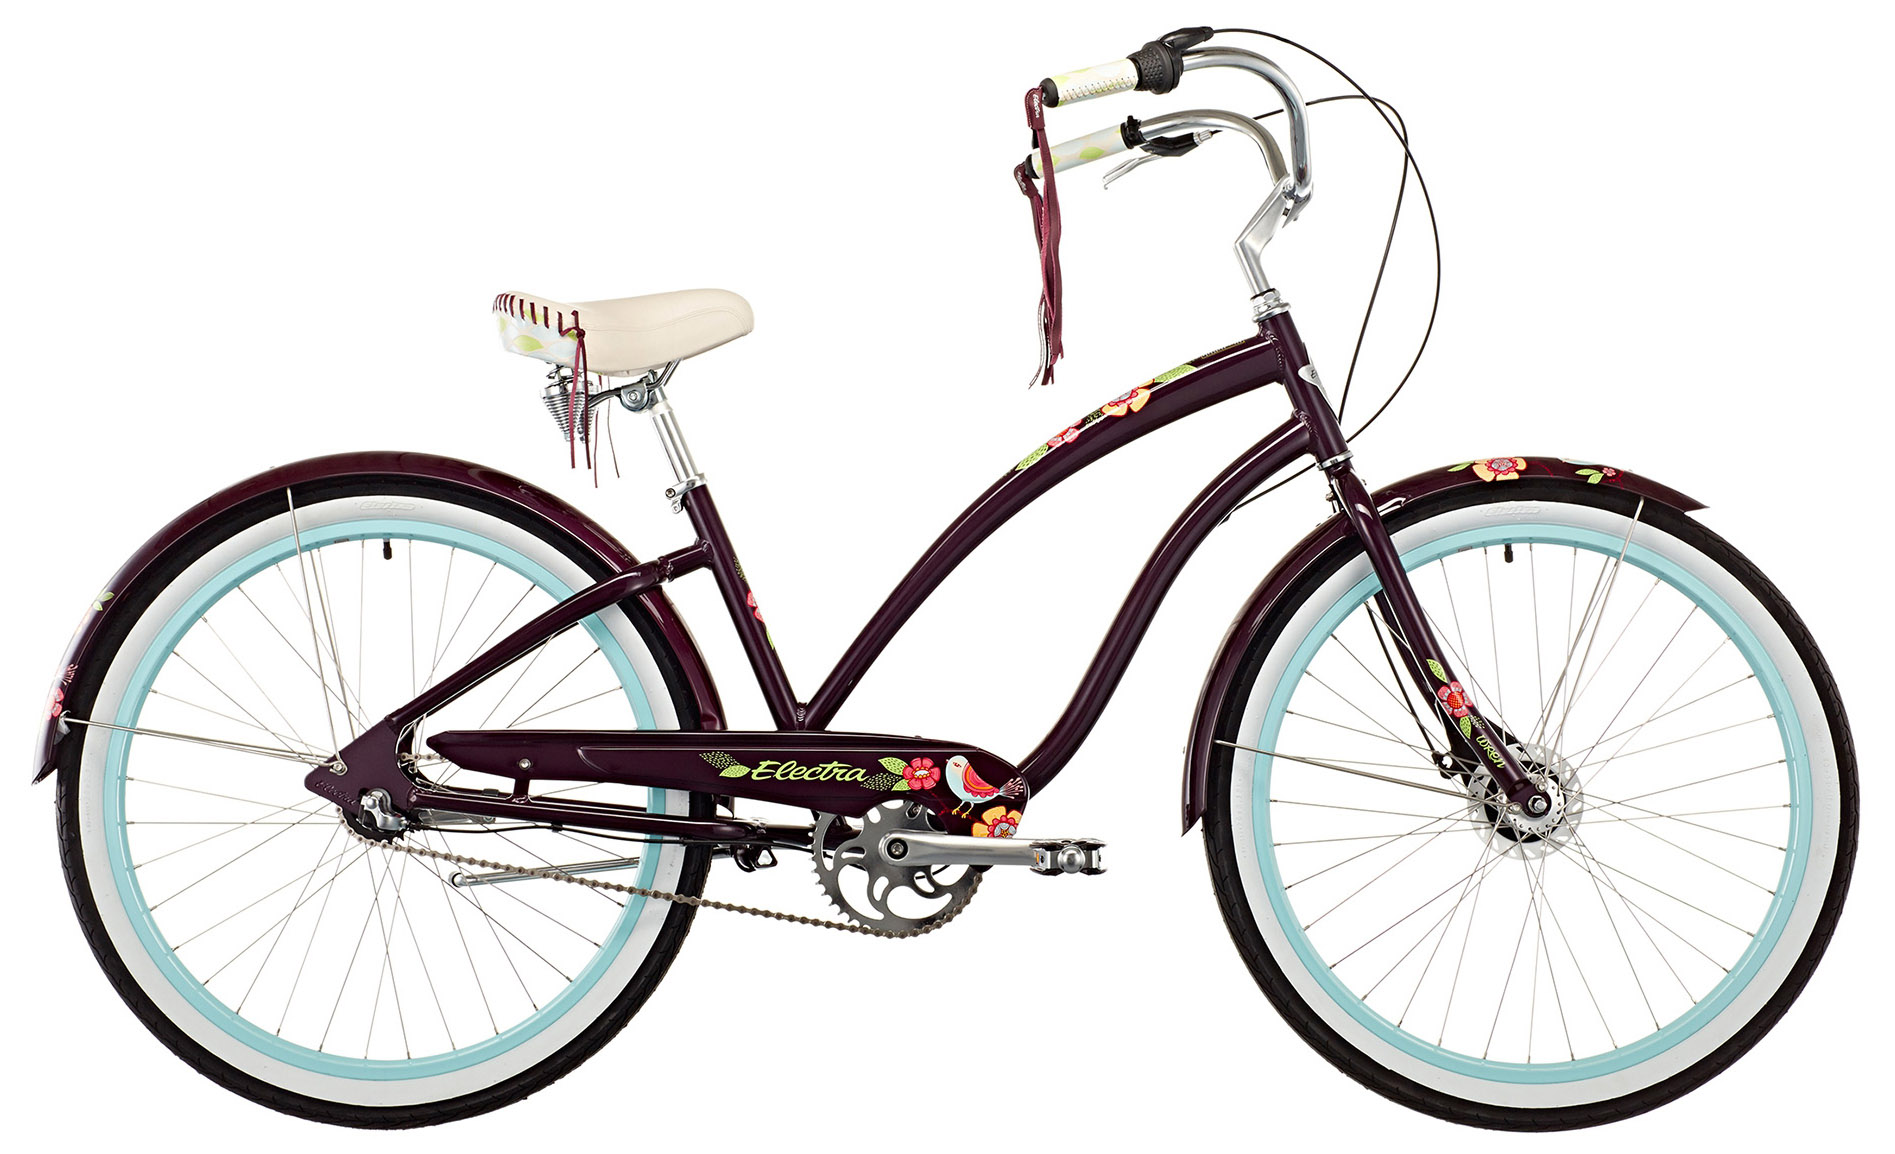  Велосипед Electra Cruiser Wren 3i Ladies 2020